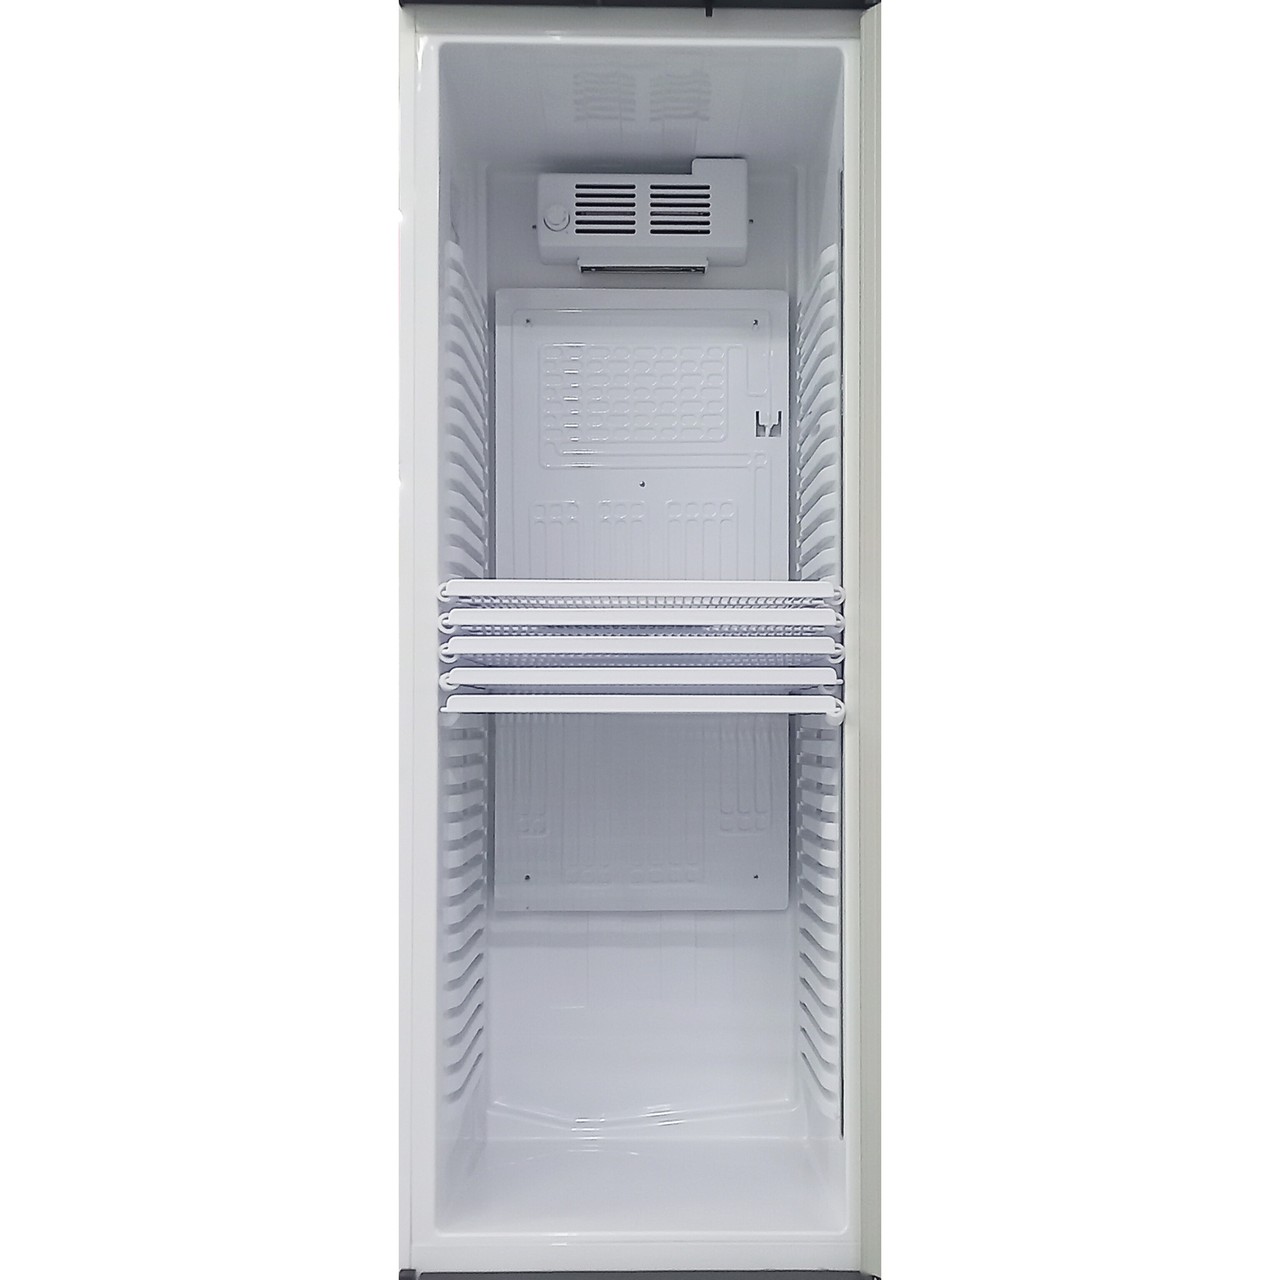 Витринный холодильник Artel 380 литров